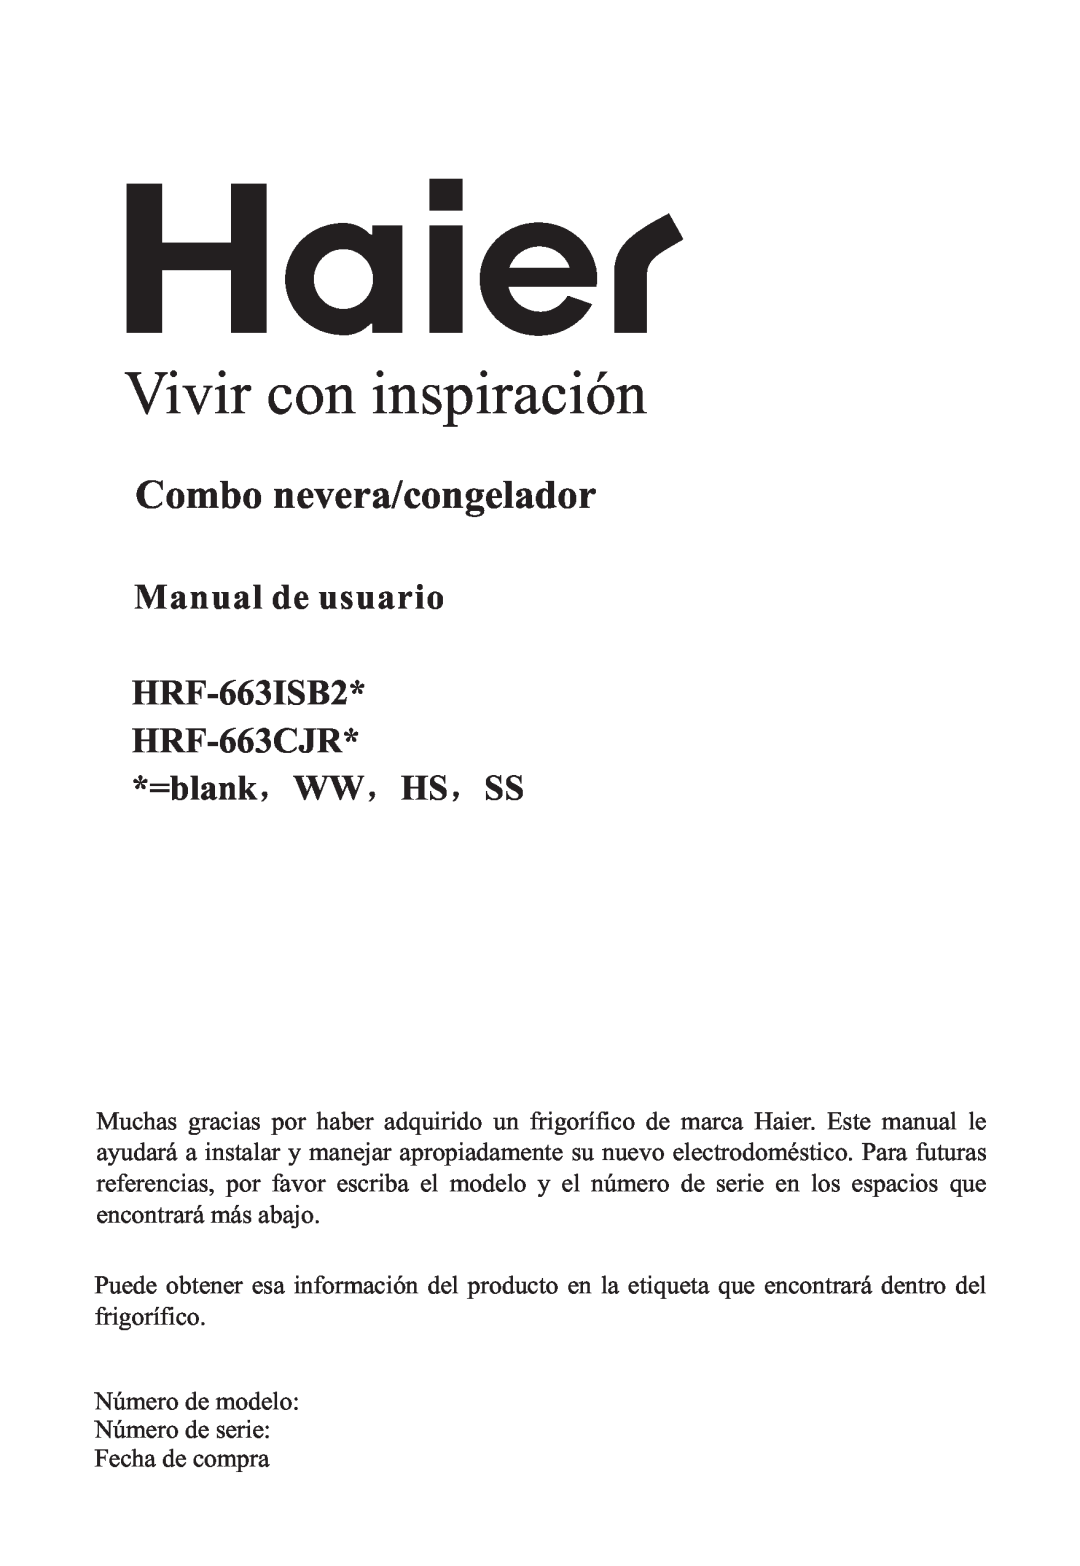 Haier manual Vivir con inspiración, Combo nevera/congelador, Manual de usuario HRF-663ISB2 HRF-663CJR, =blank WW HS SS 